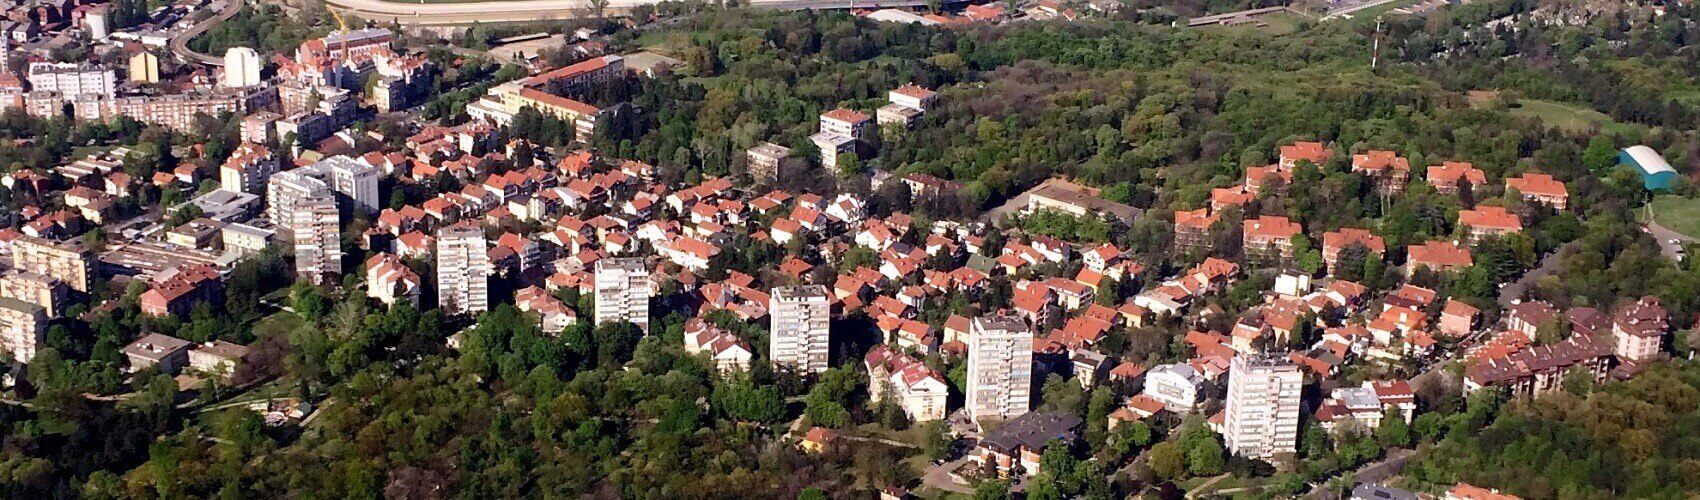 Kasko osiguranje Beograd | naselje Golf